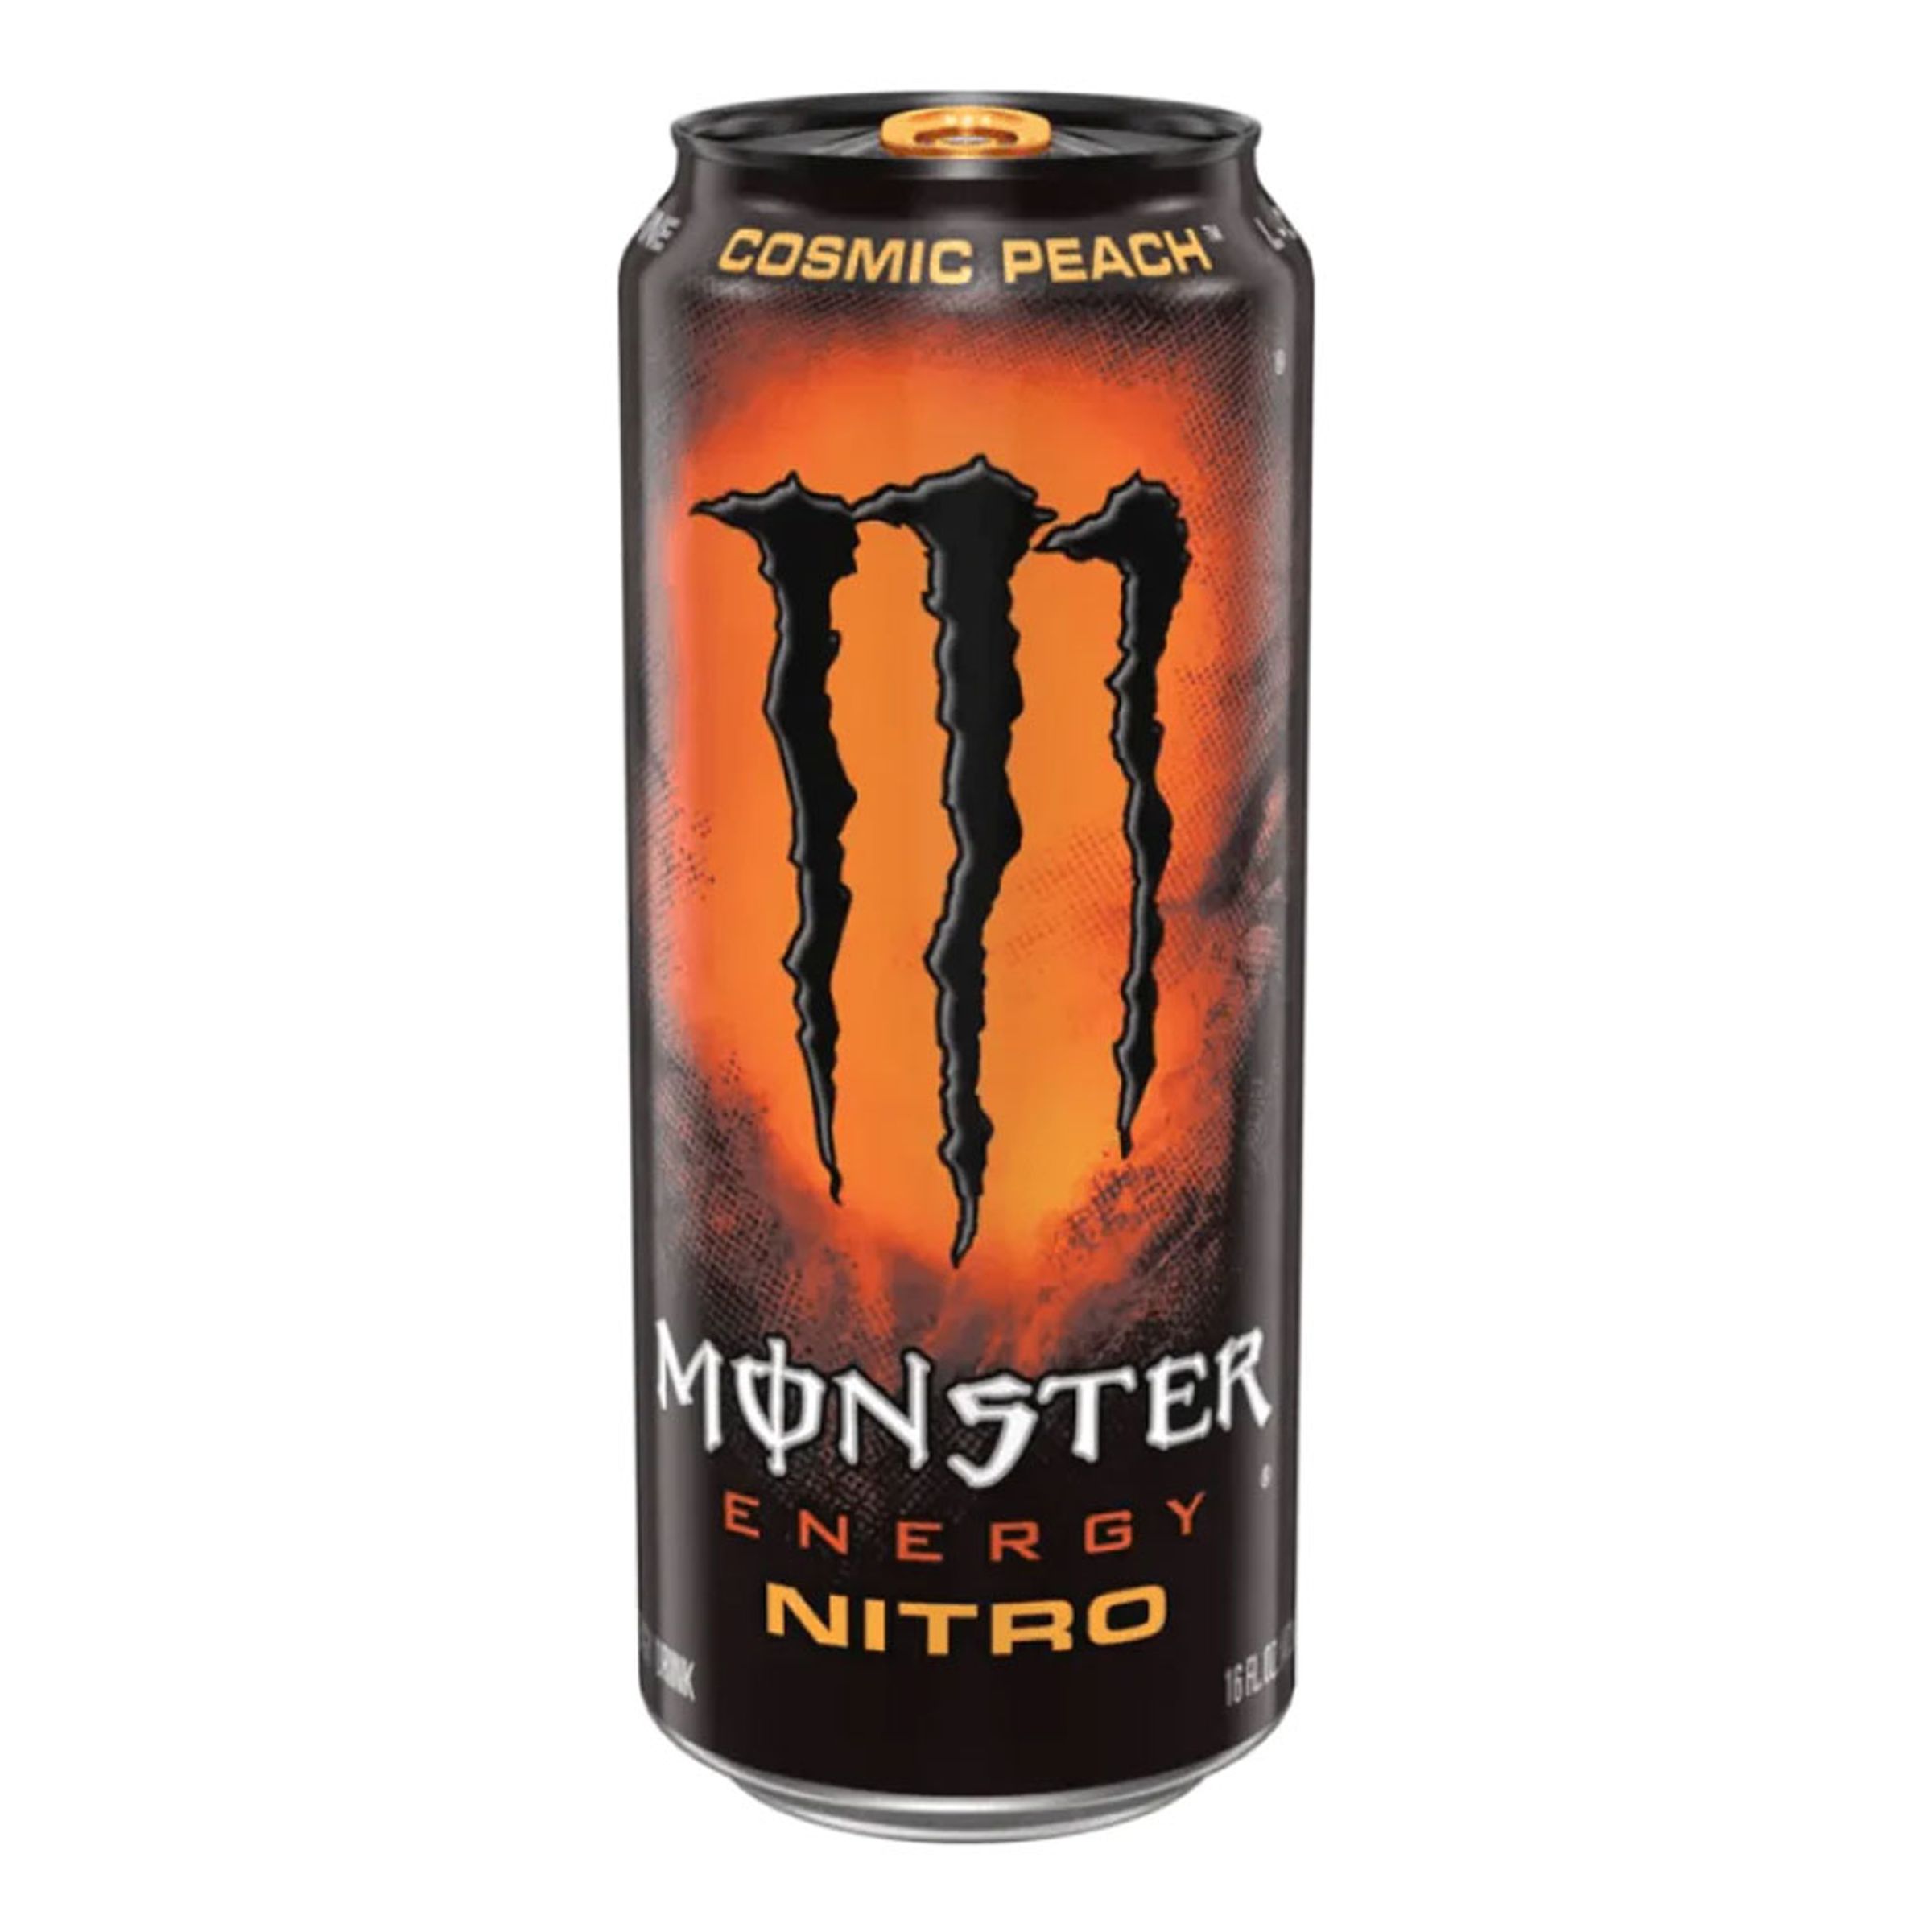 Monster Energy Nitro Cosmic Peach - 1 st